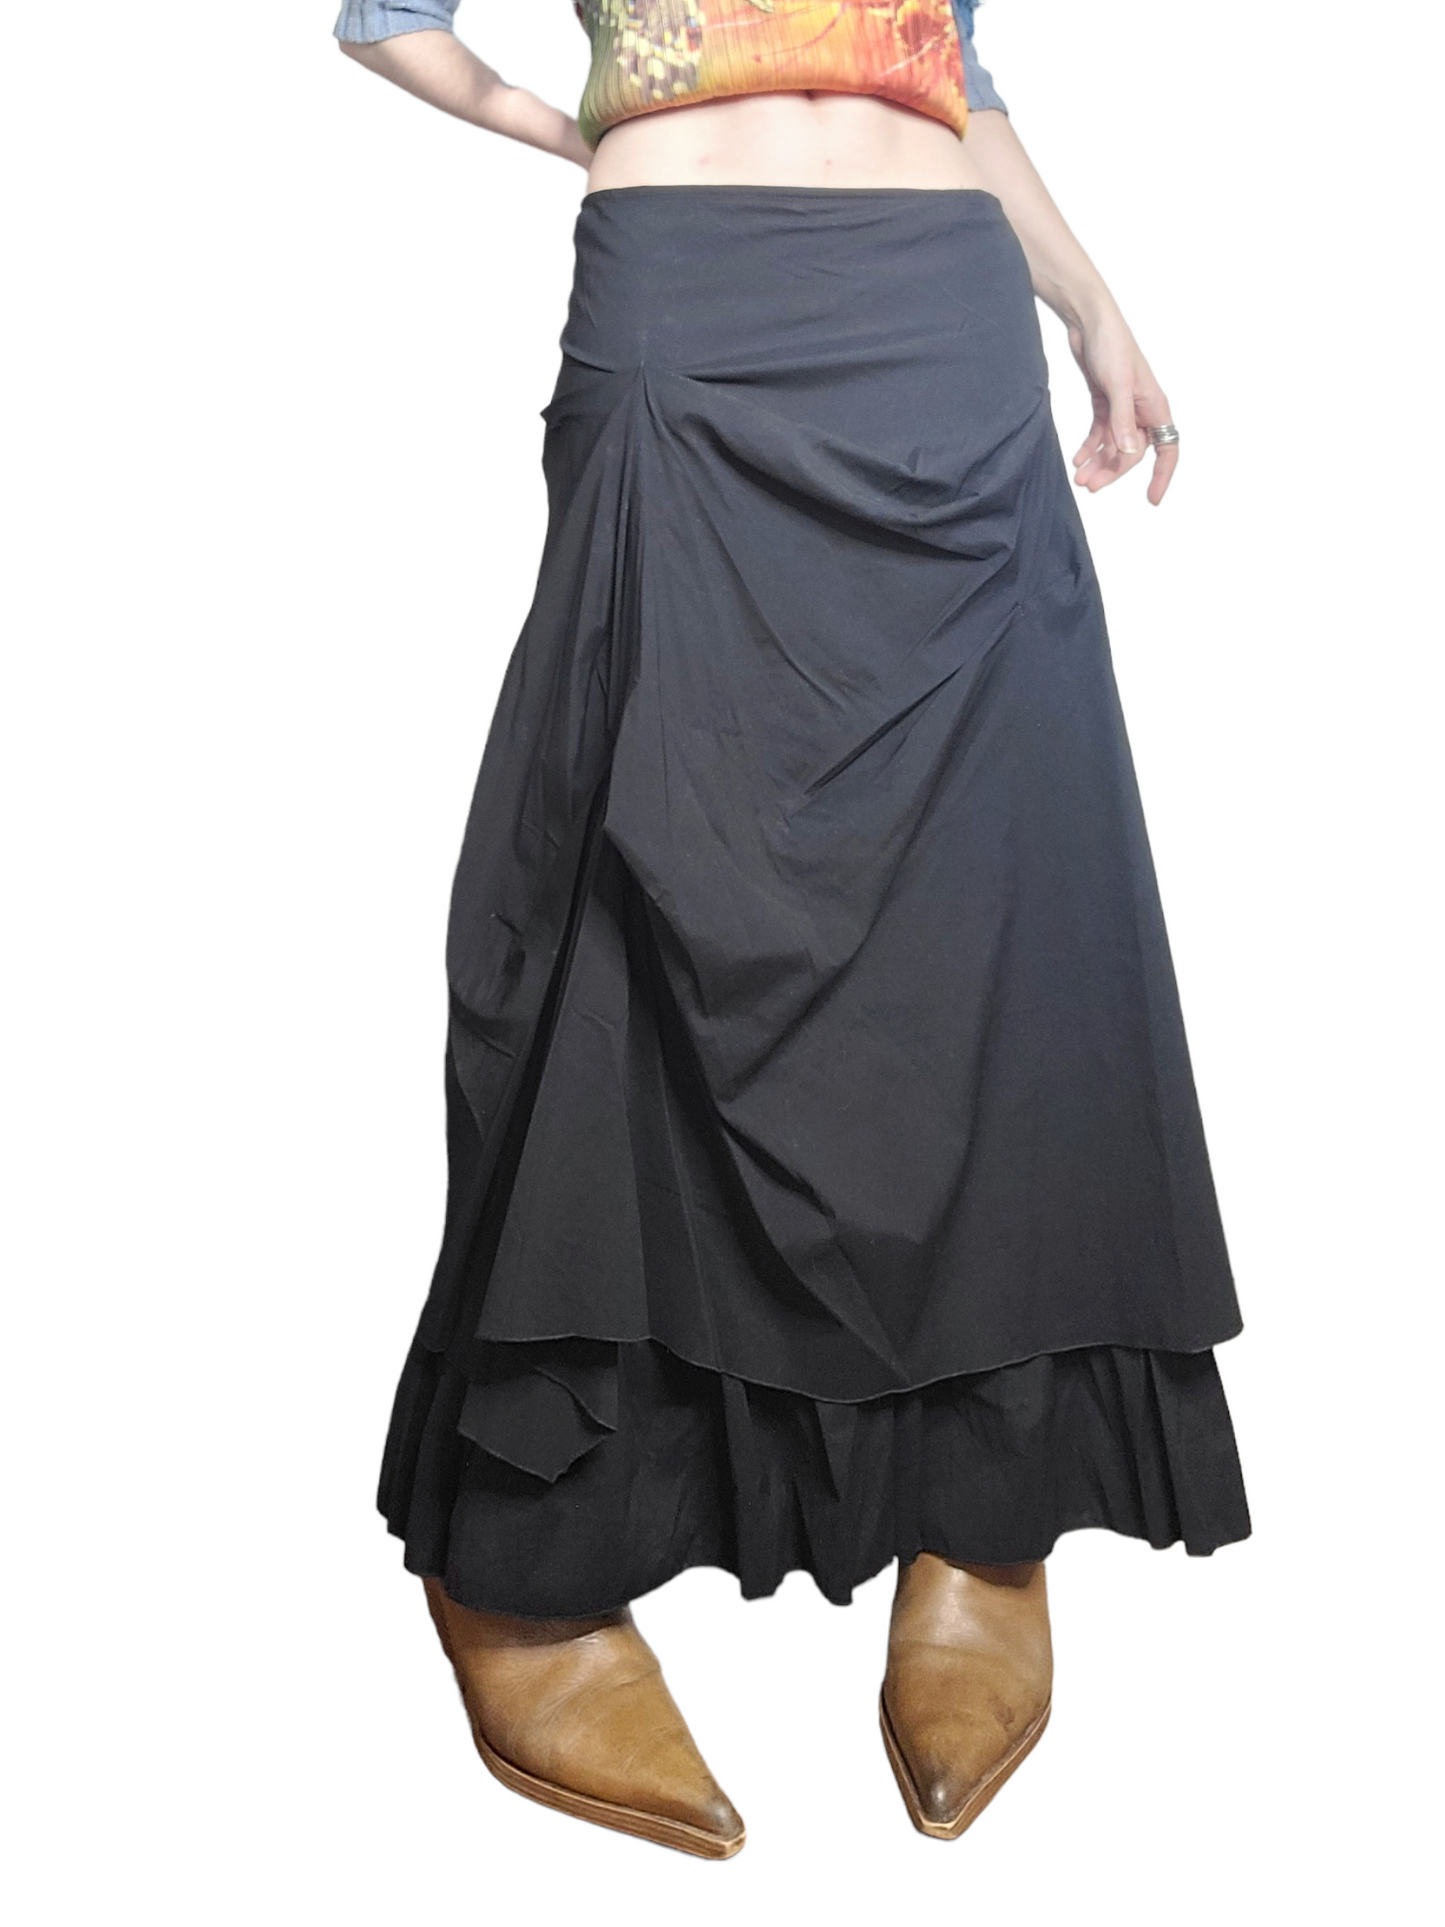 Longue jupe fairygrunge noire